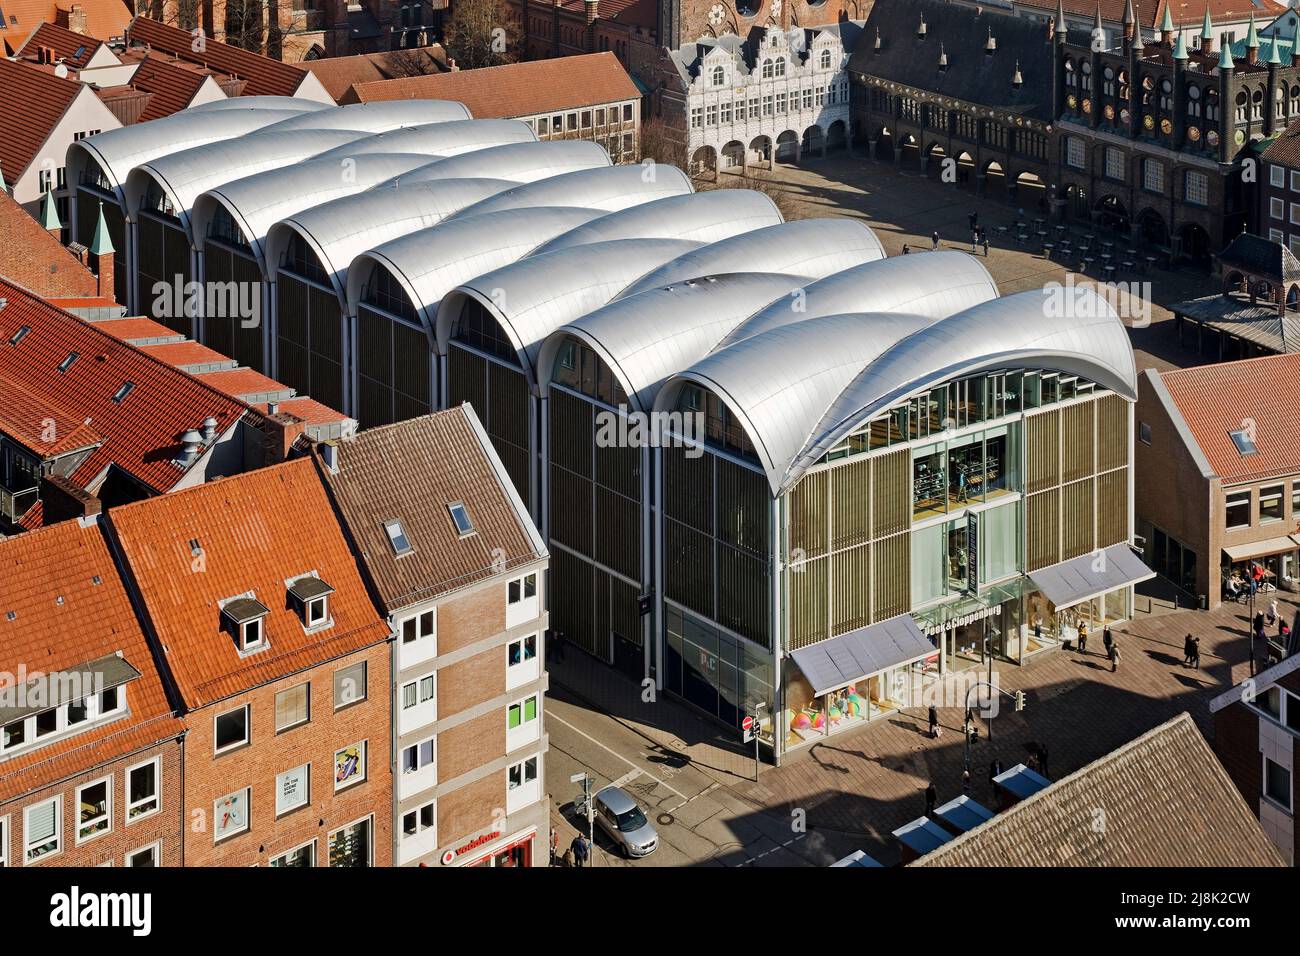 Lager Peek und Cloppenburg mit prominentem Dach am Marktplatz, Deutschland, Schleswig-Holstein, Lübeck Stockfoto